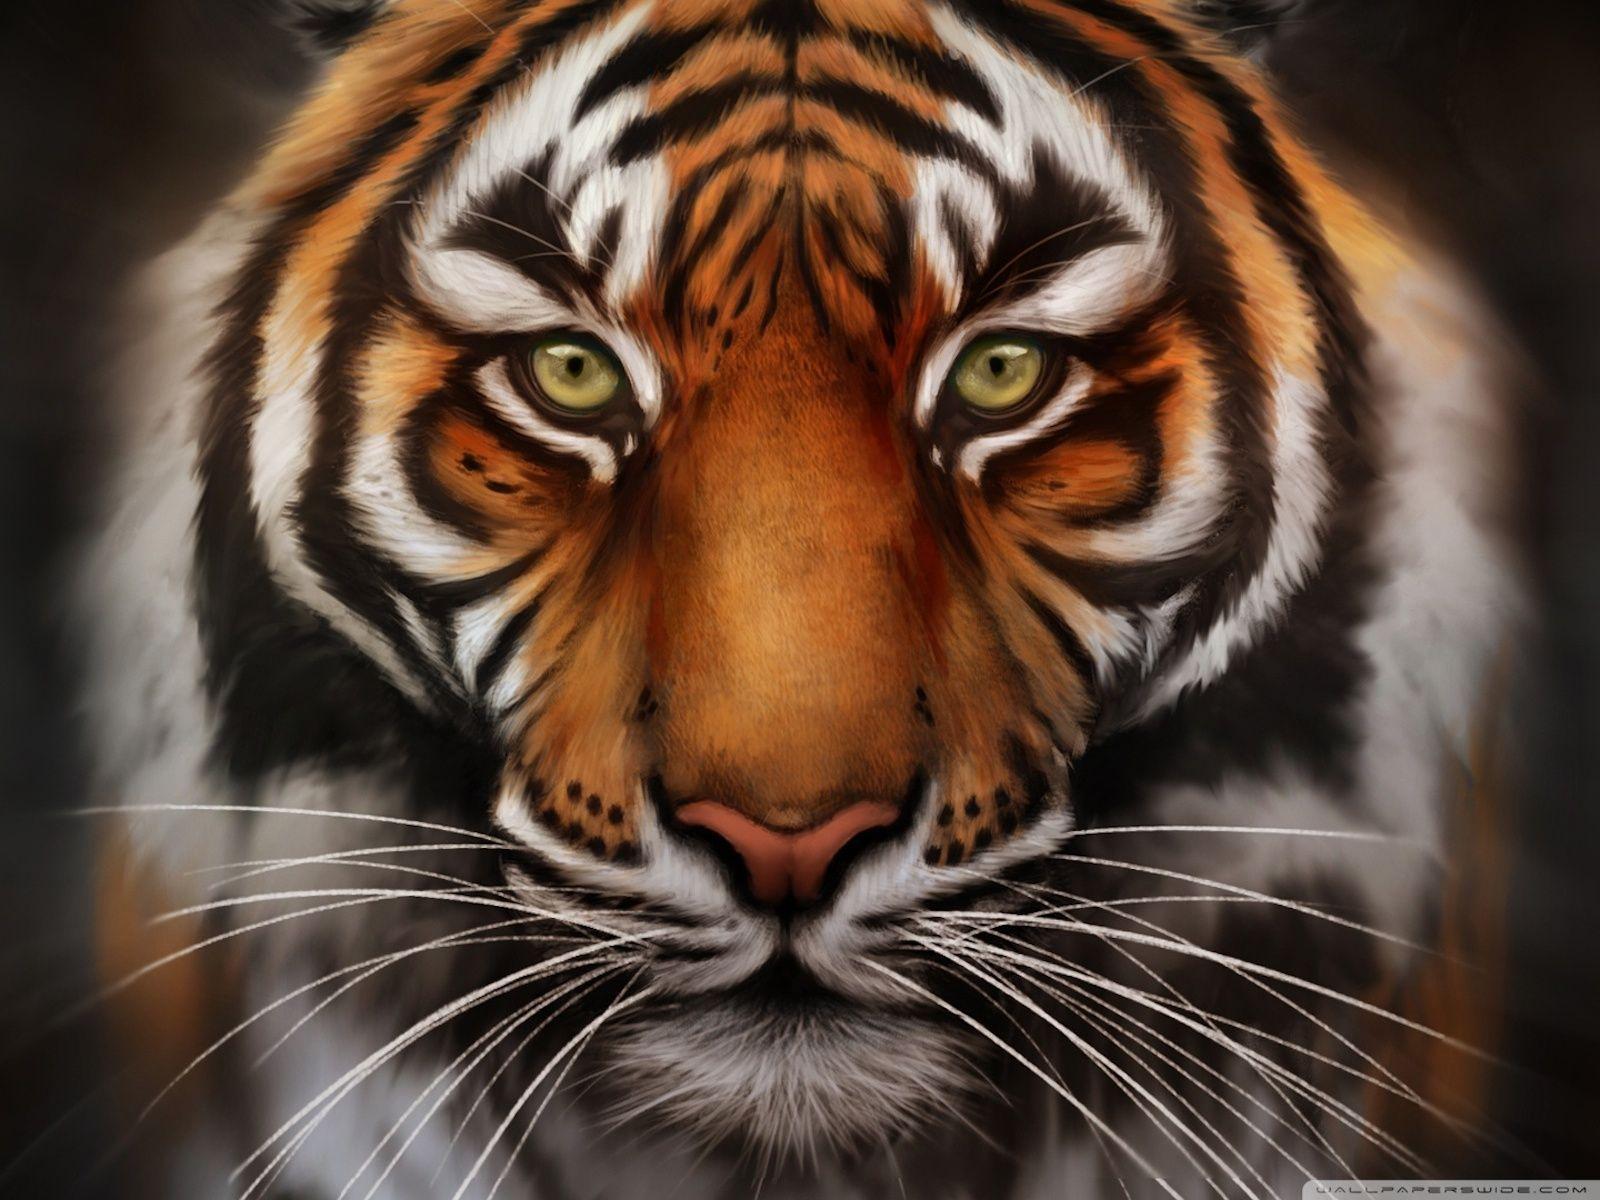 Tiger Close Up Face Hd Wallpaper